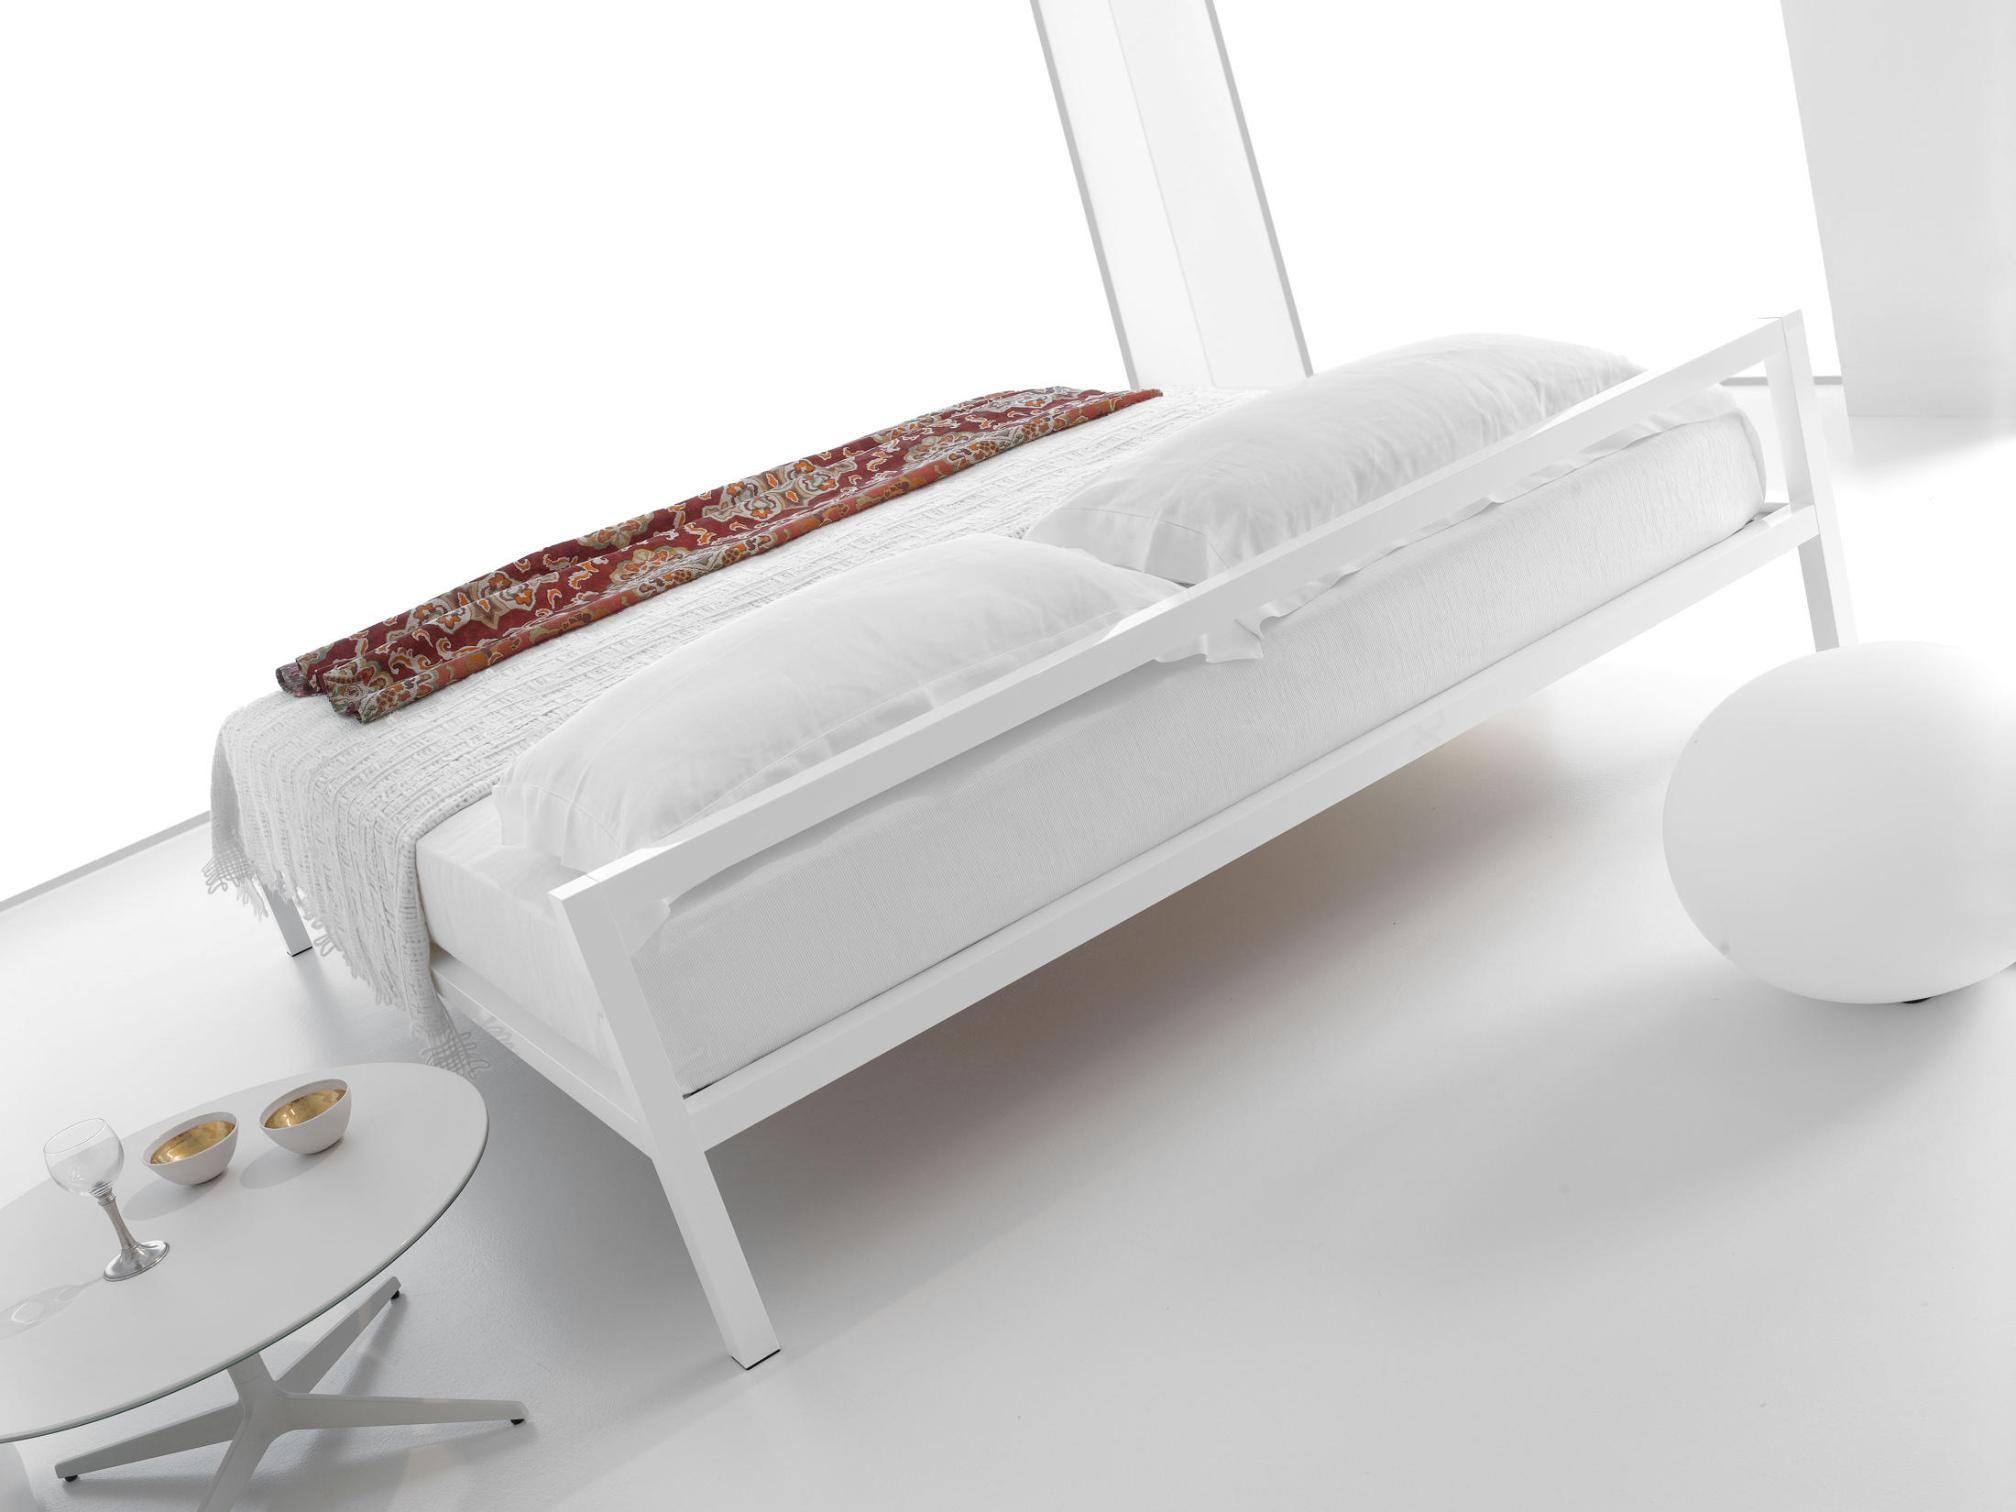 Aluminium Bed Italy ☞ Structure: Matt Painted White X053 ☞ Dimensions: 190 x 210 cm